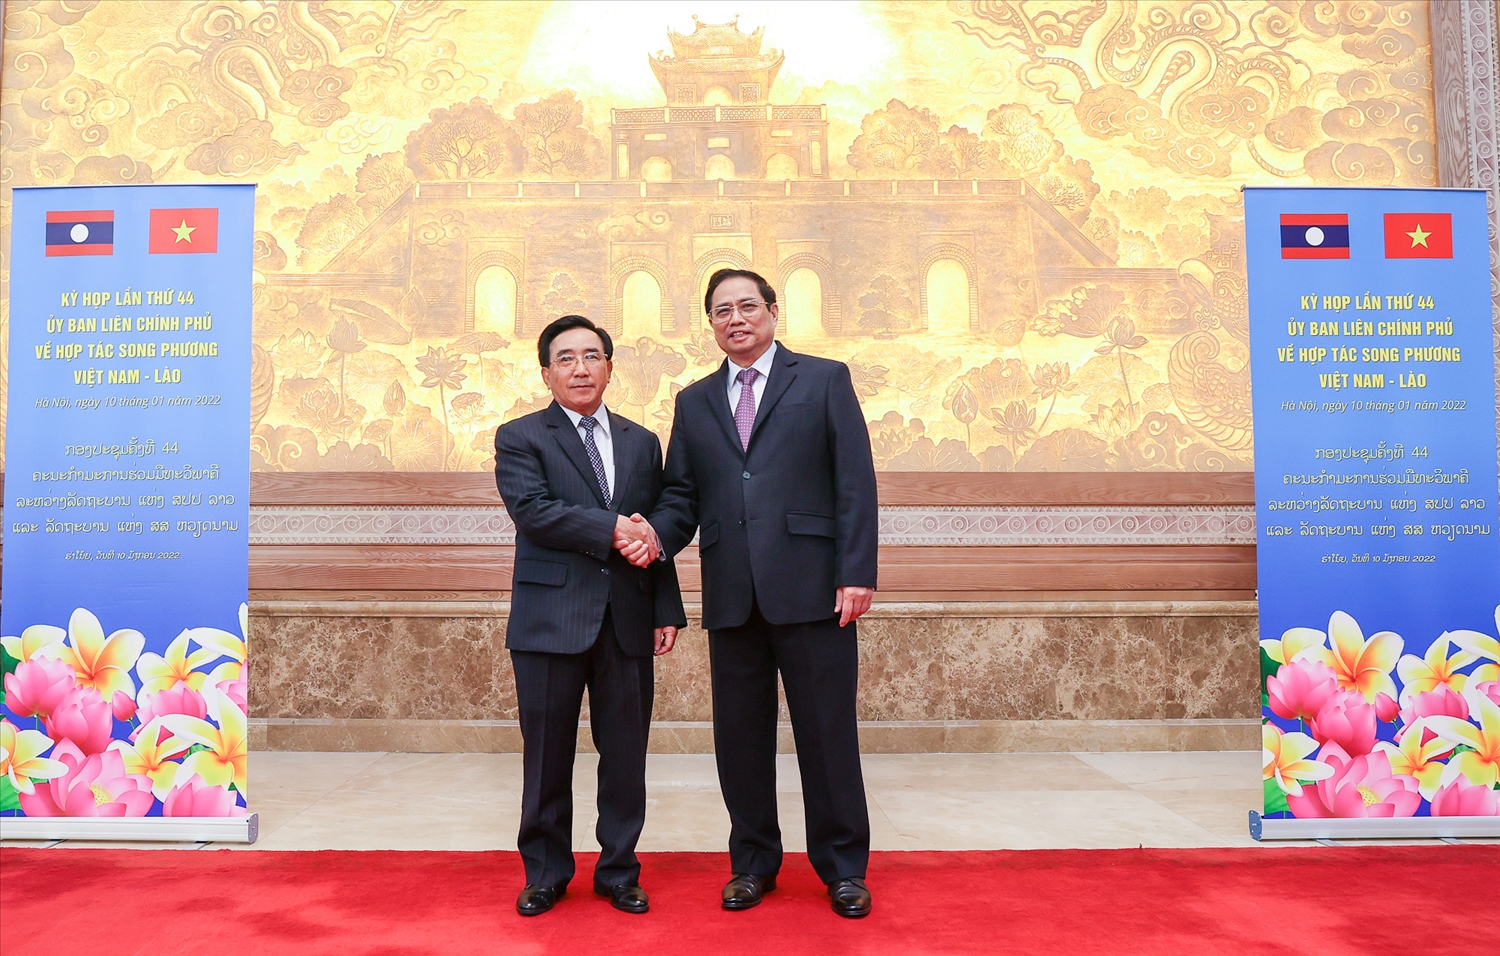 Thủ tướng Phạm Minh Chính và Thủ tướng Lào Phankham Viphavanh đồng chủ trì Kỳ họp lần thứ 44 Ủy ban liên Chính phủ về hợp tác song phương Việt Nam-Lào. Ảnh: VGP/Nhật Bắc